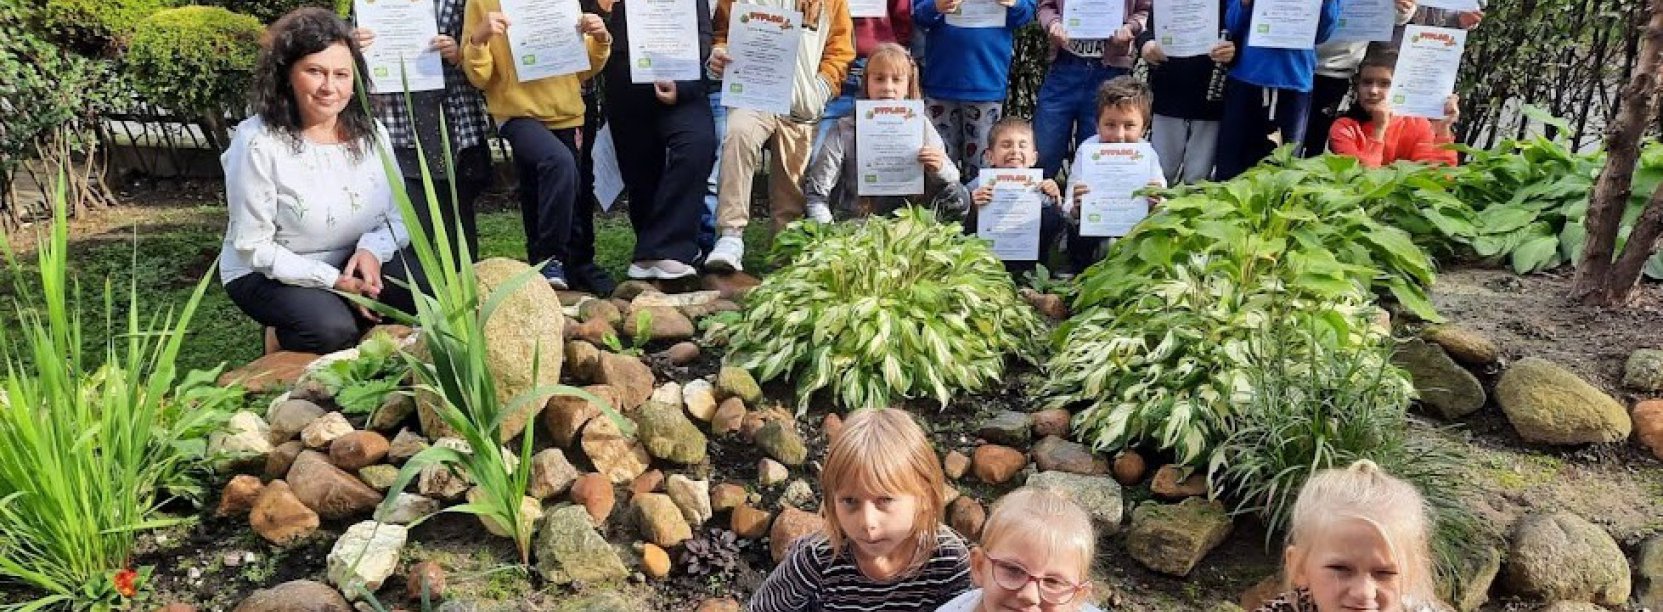 Grupowe zdjęcie dzieci trzymających dyplony, dookoła zieleń 